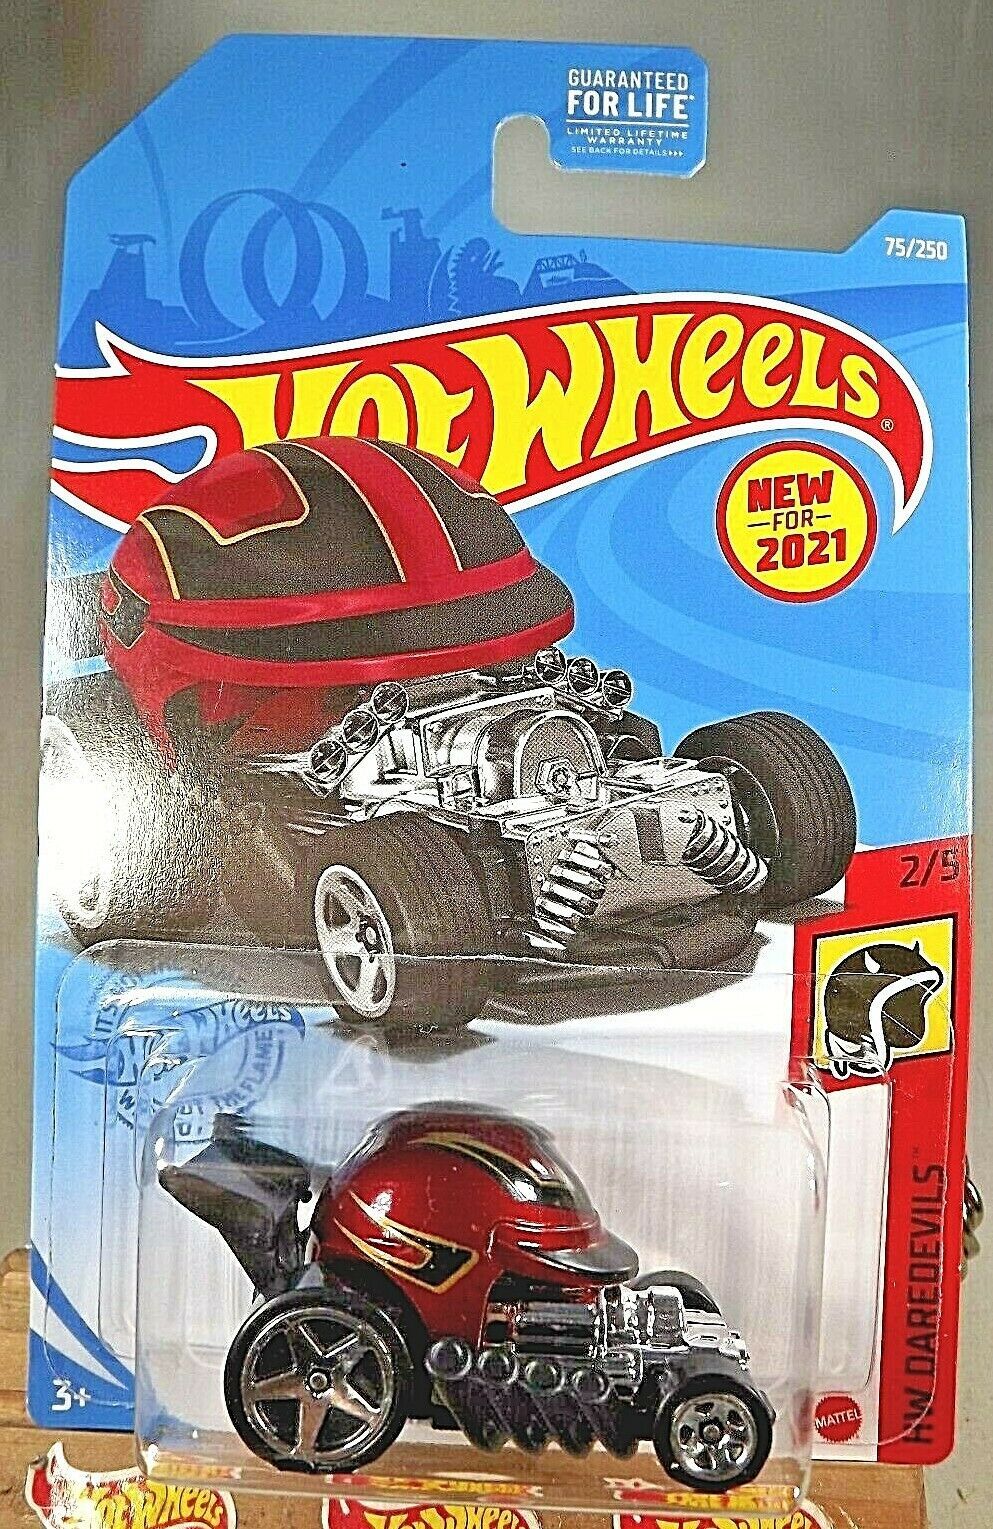 2021 Hot Wheels #75 HW Daredevils 2/5 HEAD GASKET Maroon w/Chrome 5 Spoke Wheels